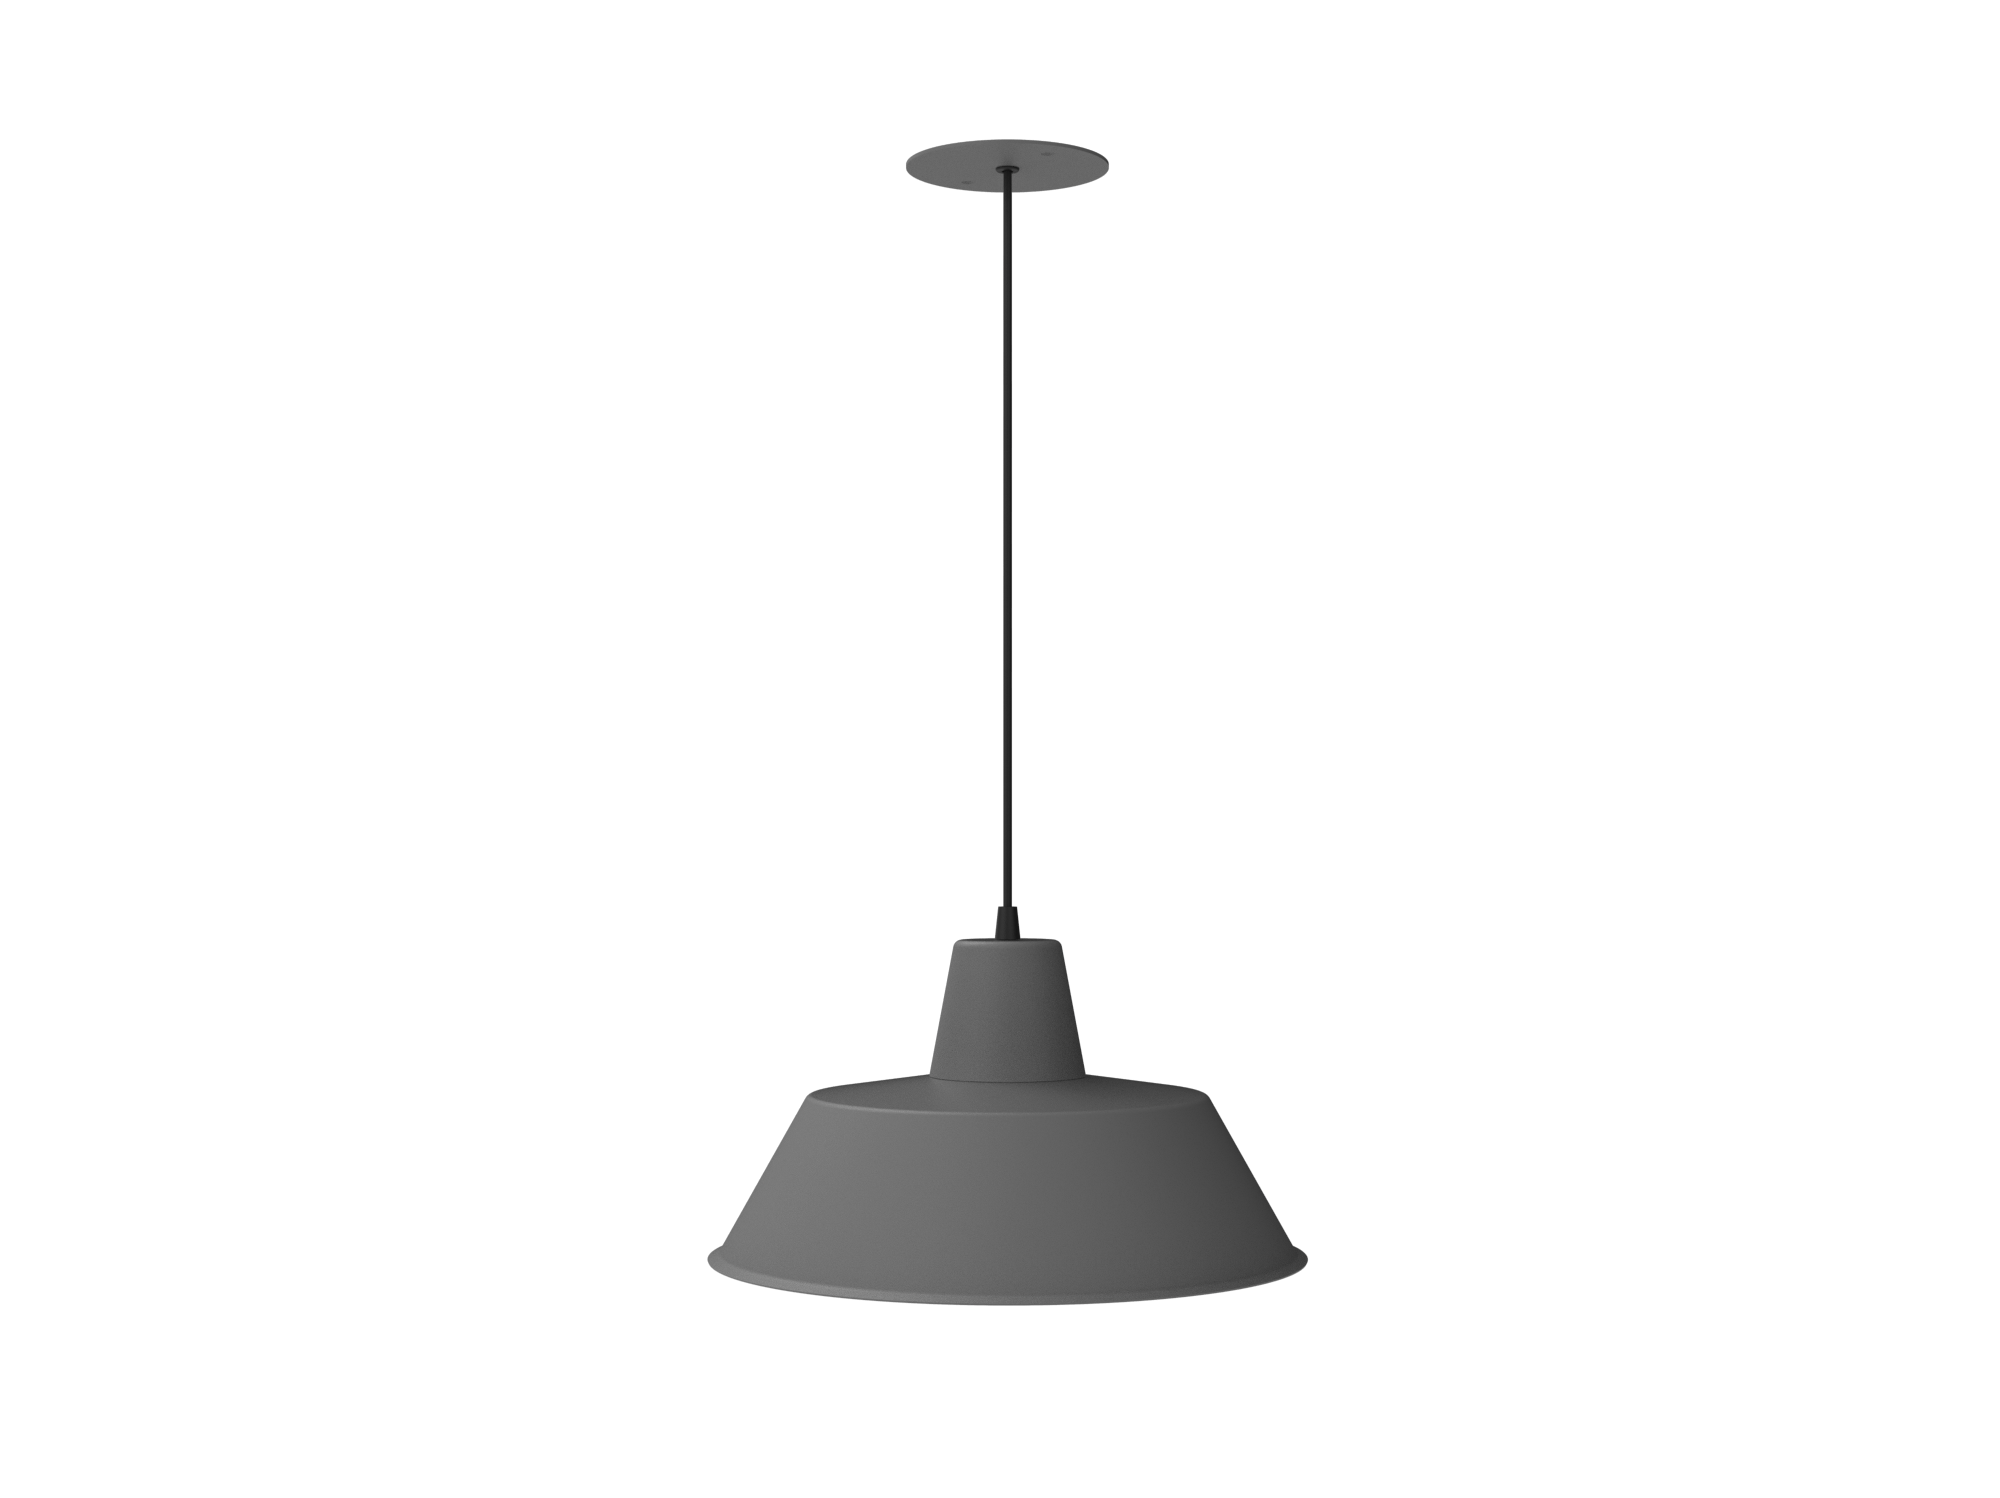 D35P-Luminária Led Pendente 35cm E27 7W 560 Lumens Bivolt (127/220V)